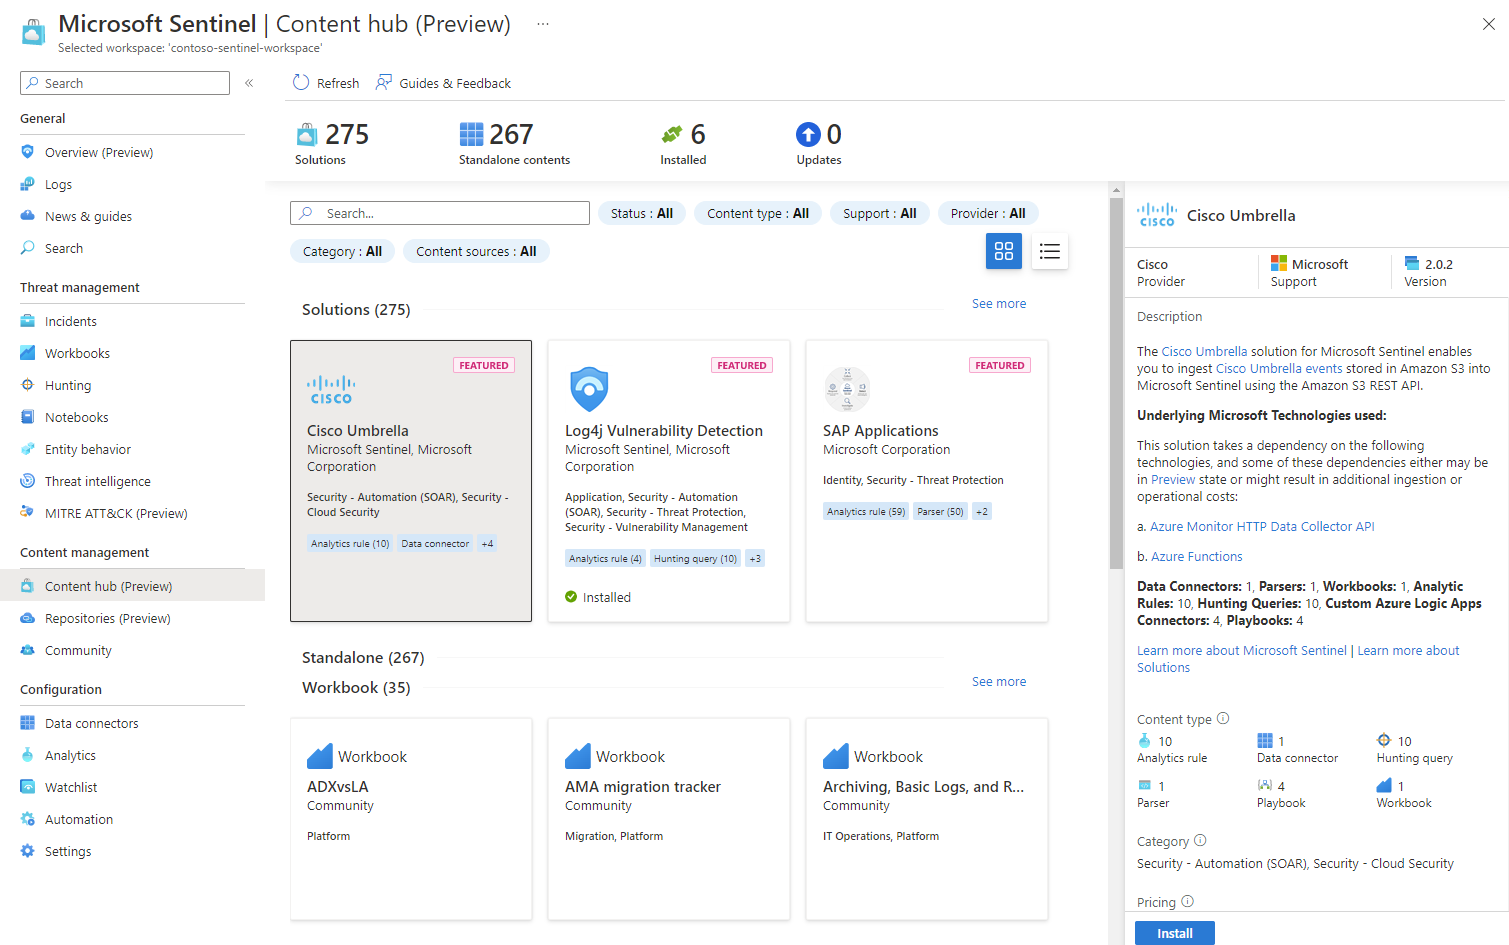 Captura de tela do hub de conteúdo do Microsoft Sentinel no portal do Azure.